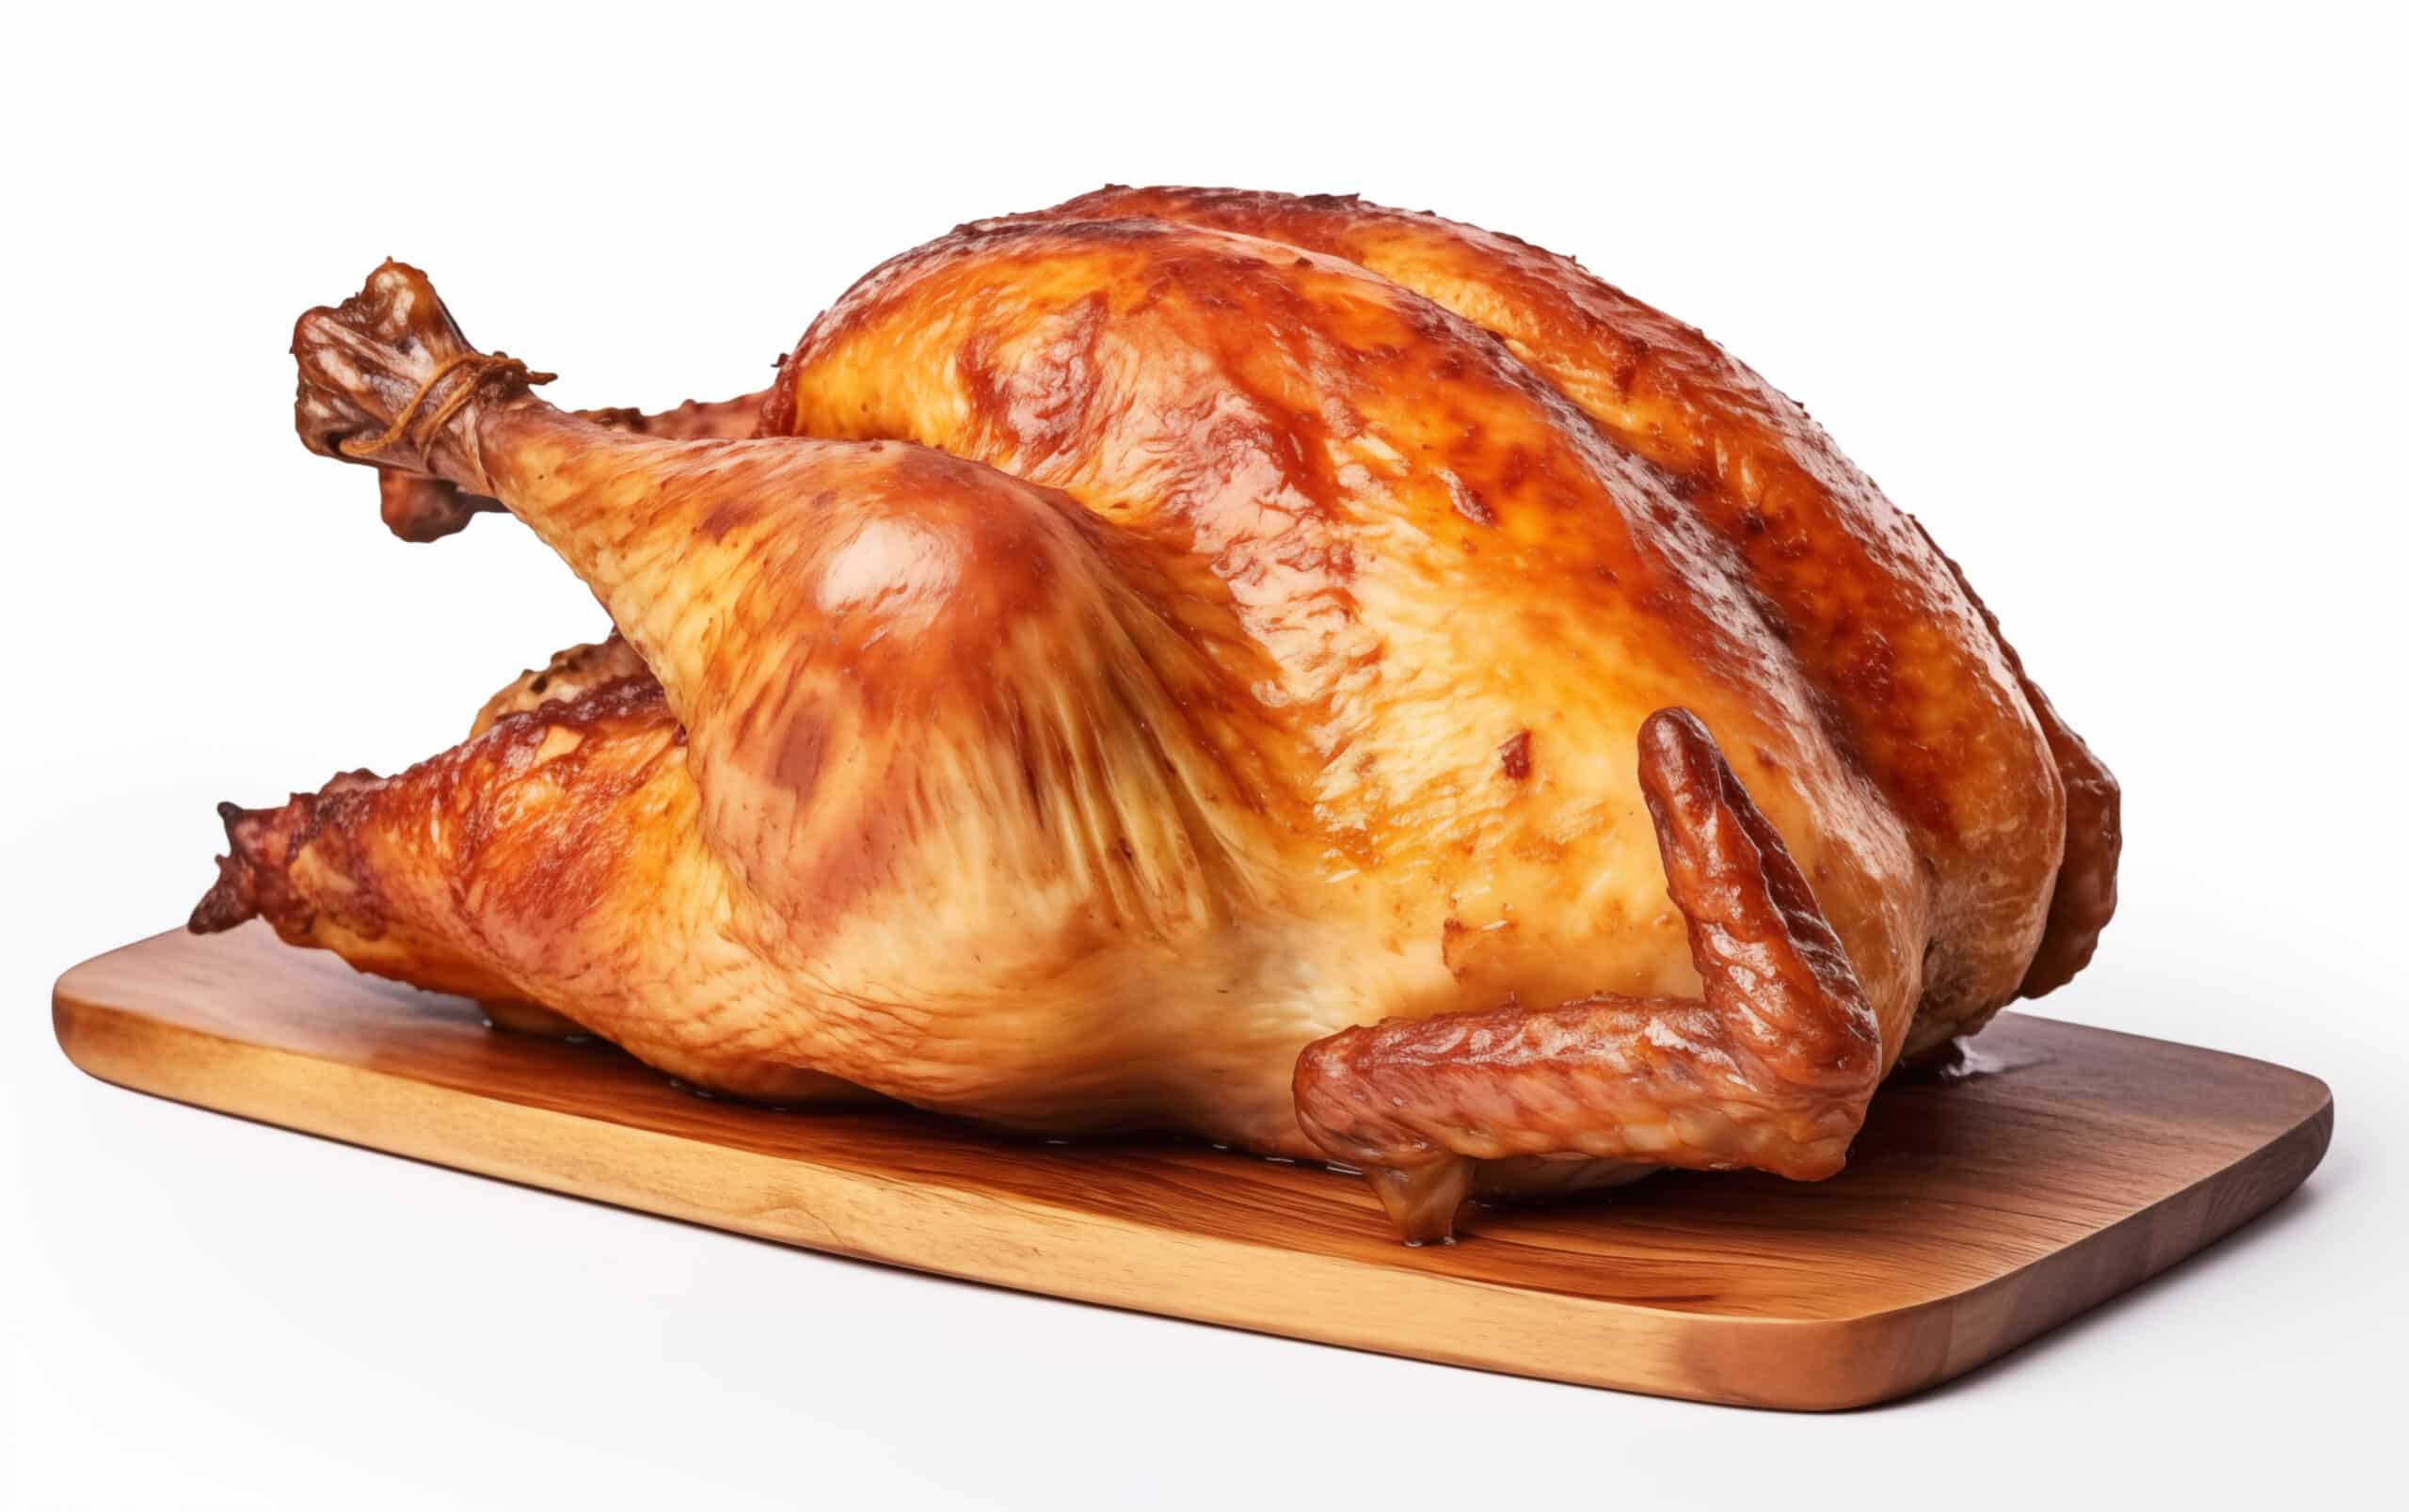 www.appr.com : How Long To Smoke A Turkey On A Pellet Grill?